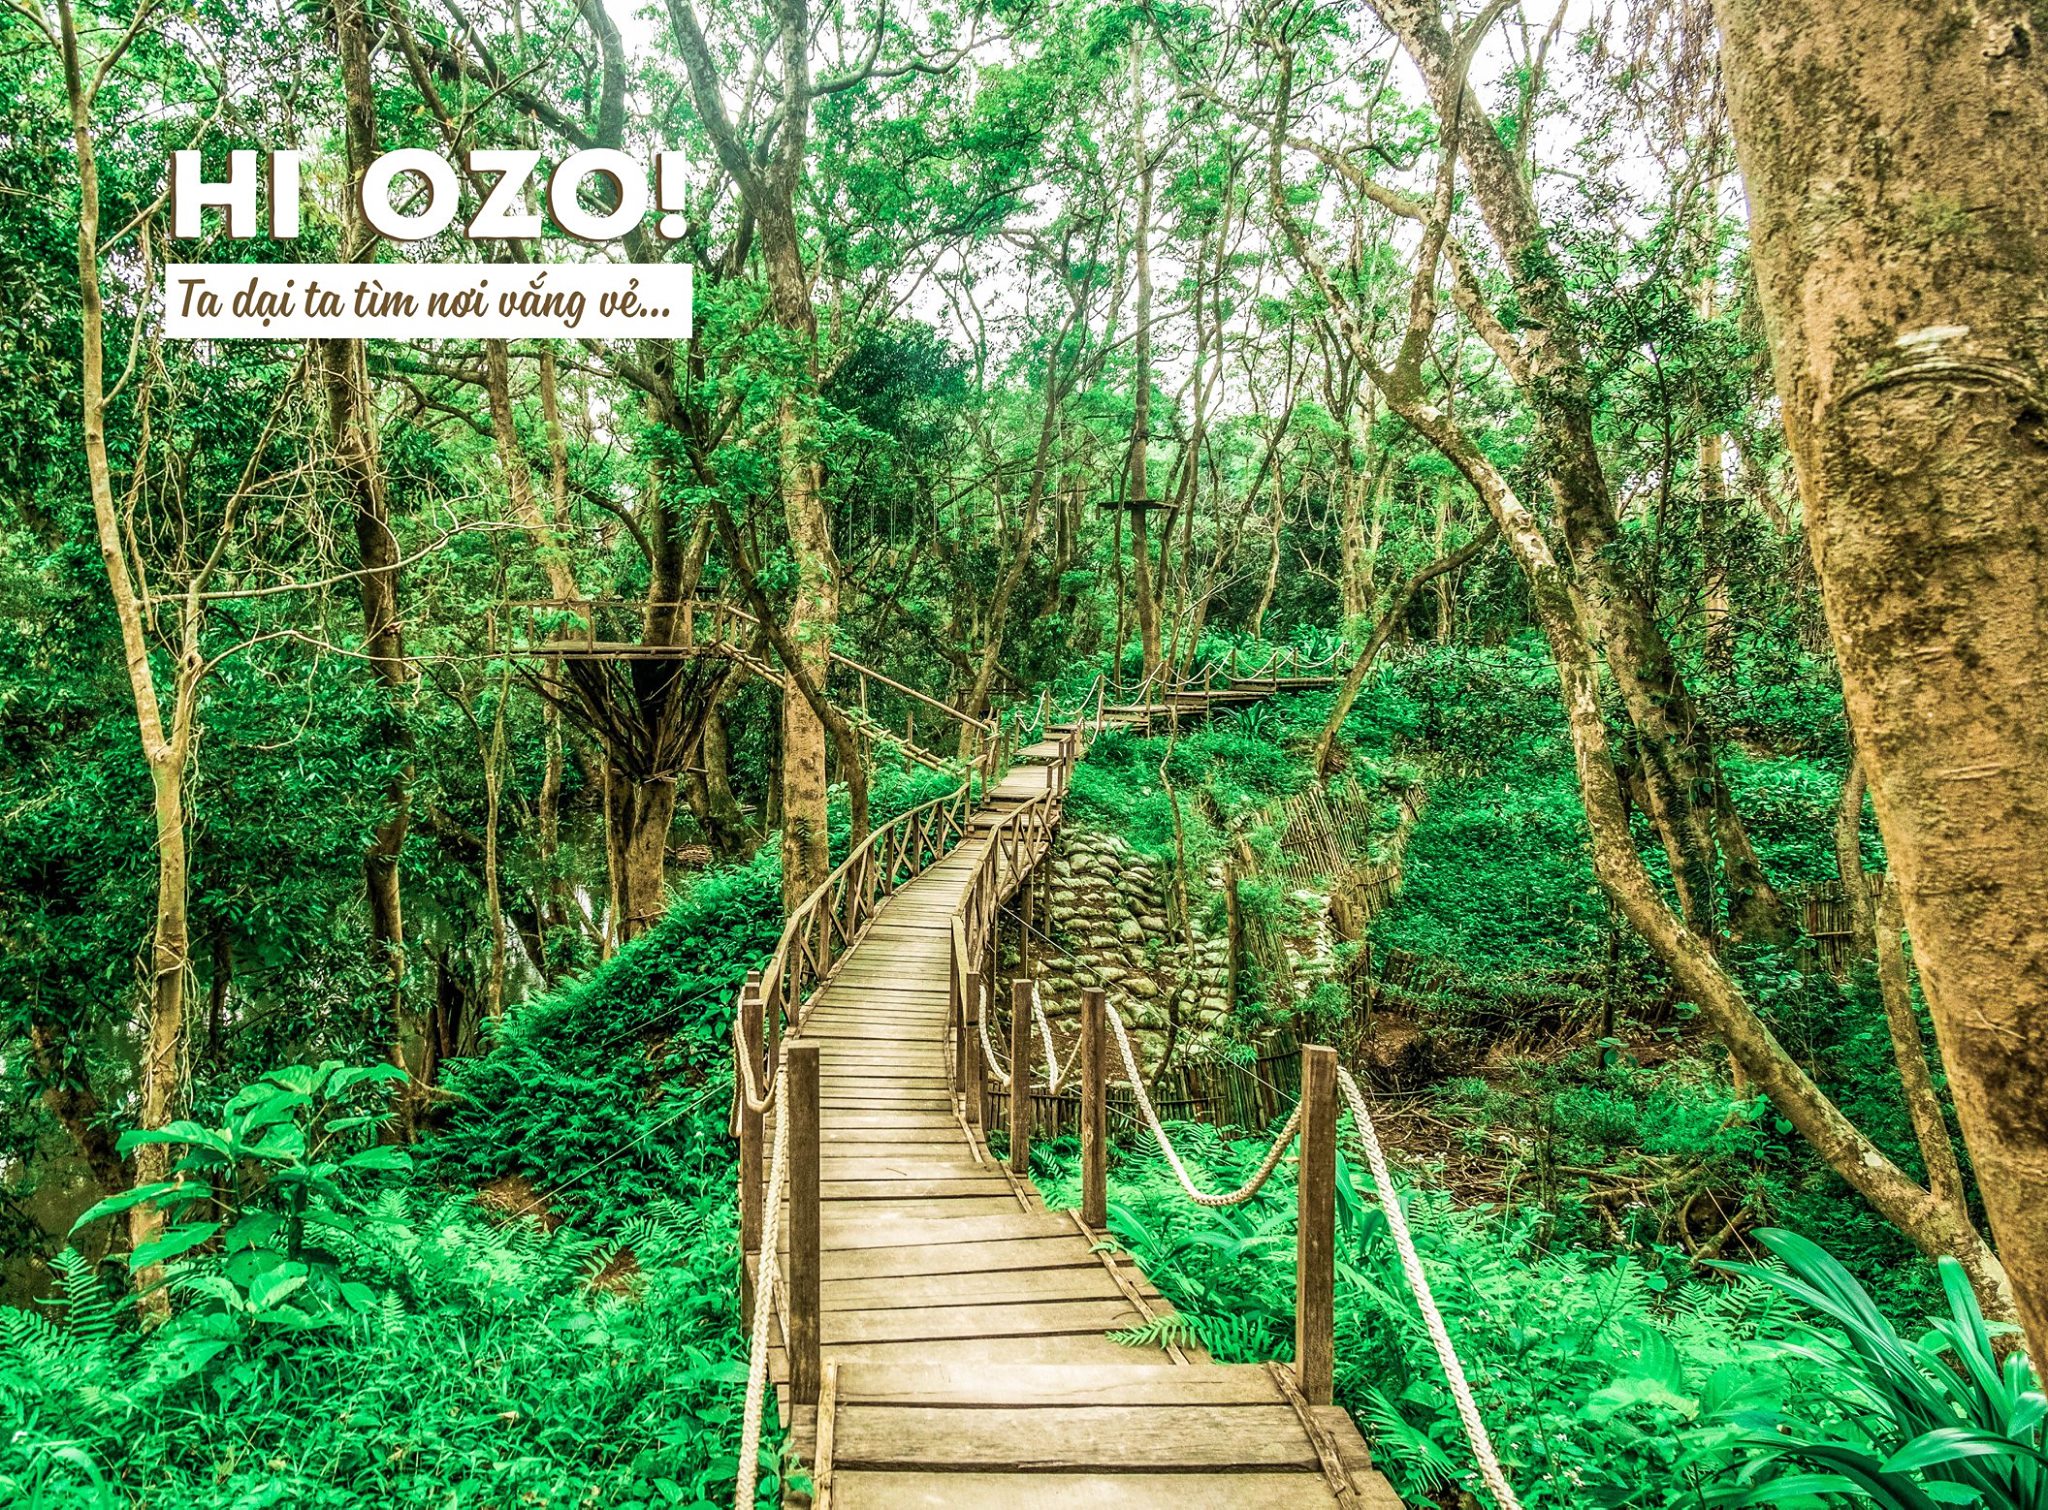 Tiểu Bali Ozo Treetop Park - Địa điểm tham quan với hệ sinh thái đa dạng tại Quảng Bình